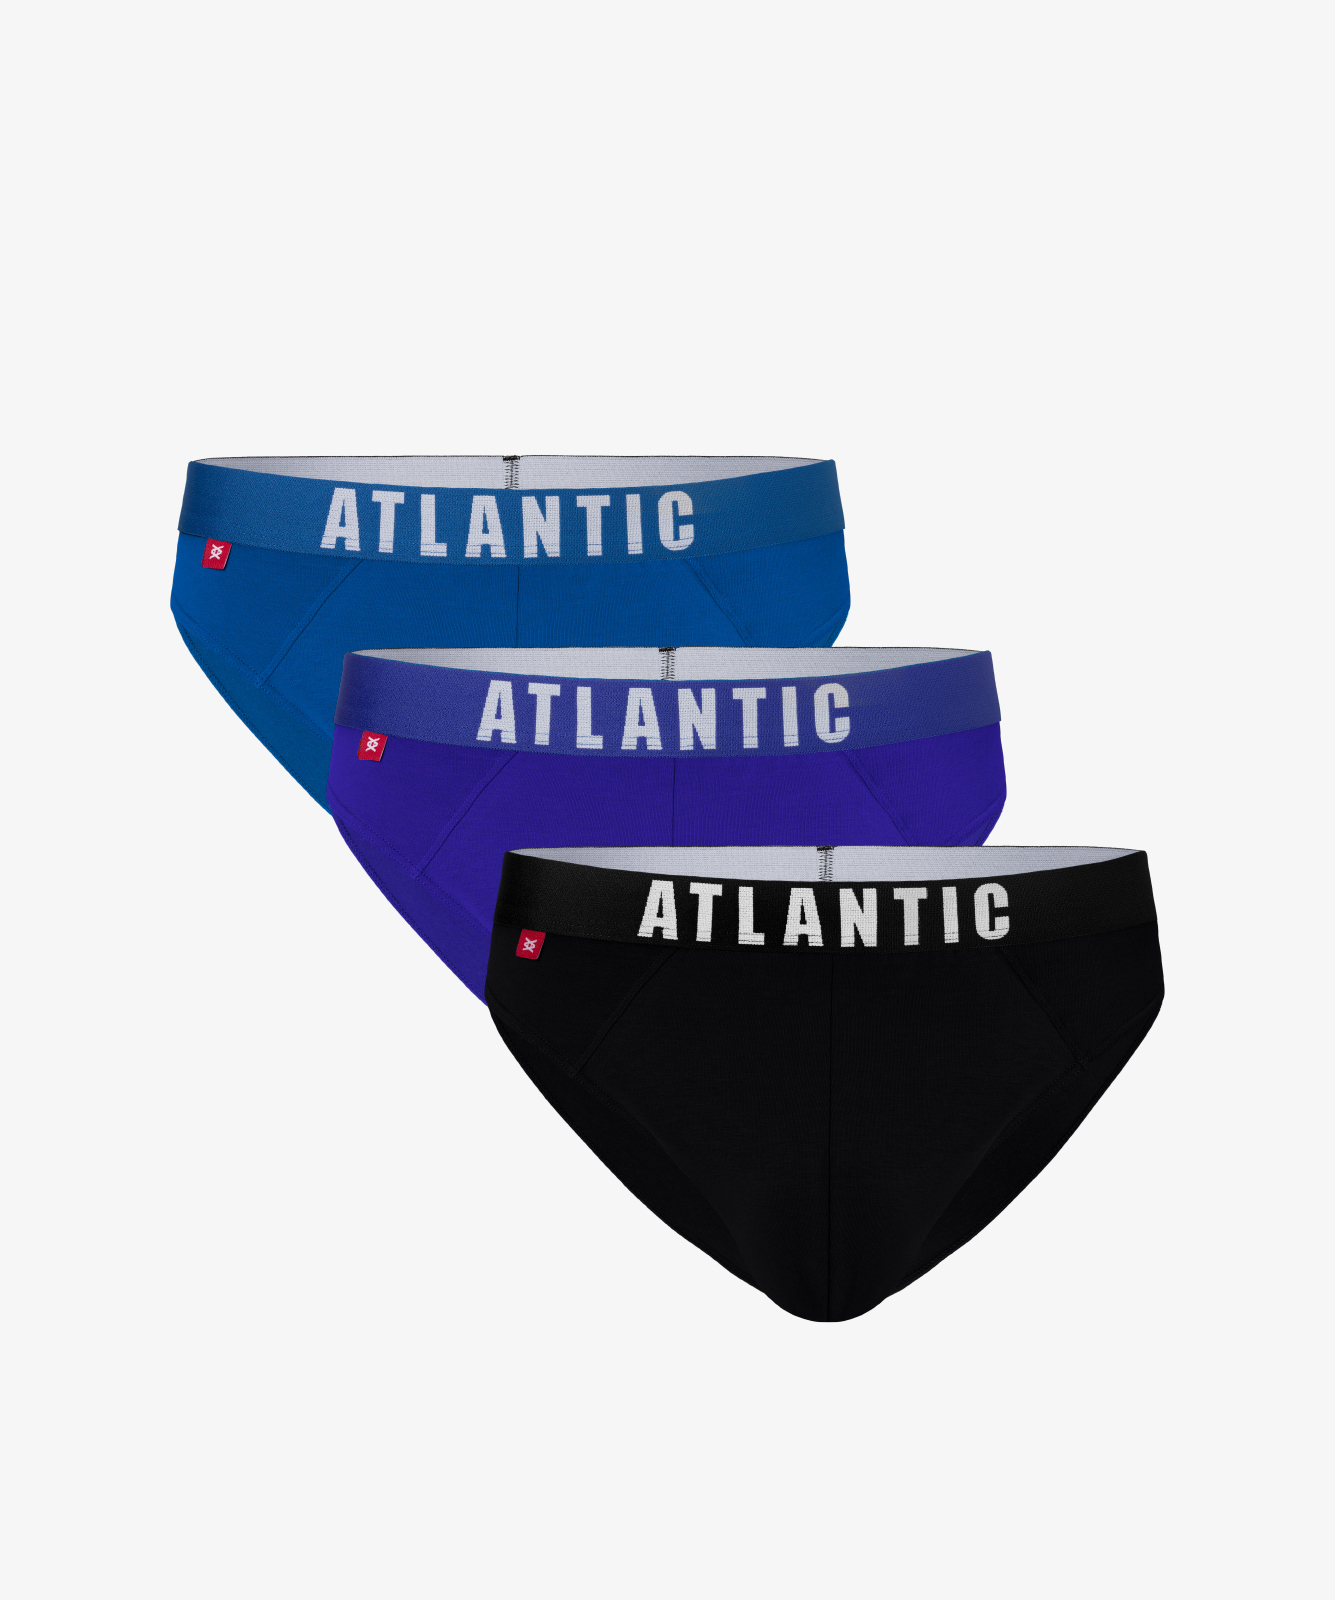 Мужские трусы слипы спорт Atlantic, набор 3 шт., хлопок, бирюзовые + голубые + темно-синие, 3MP-094